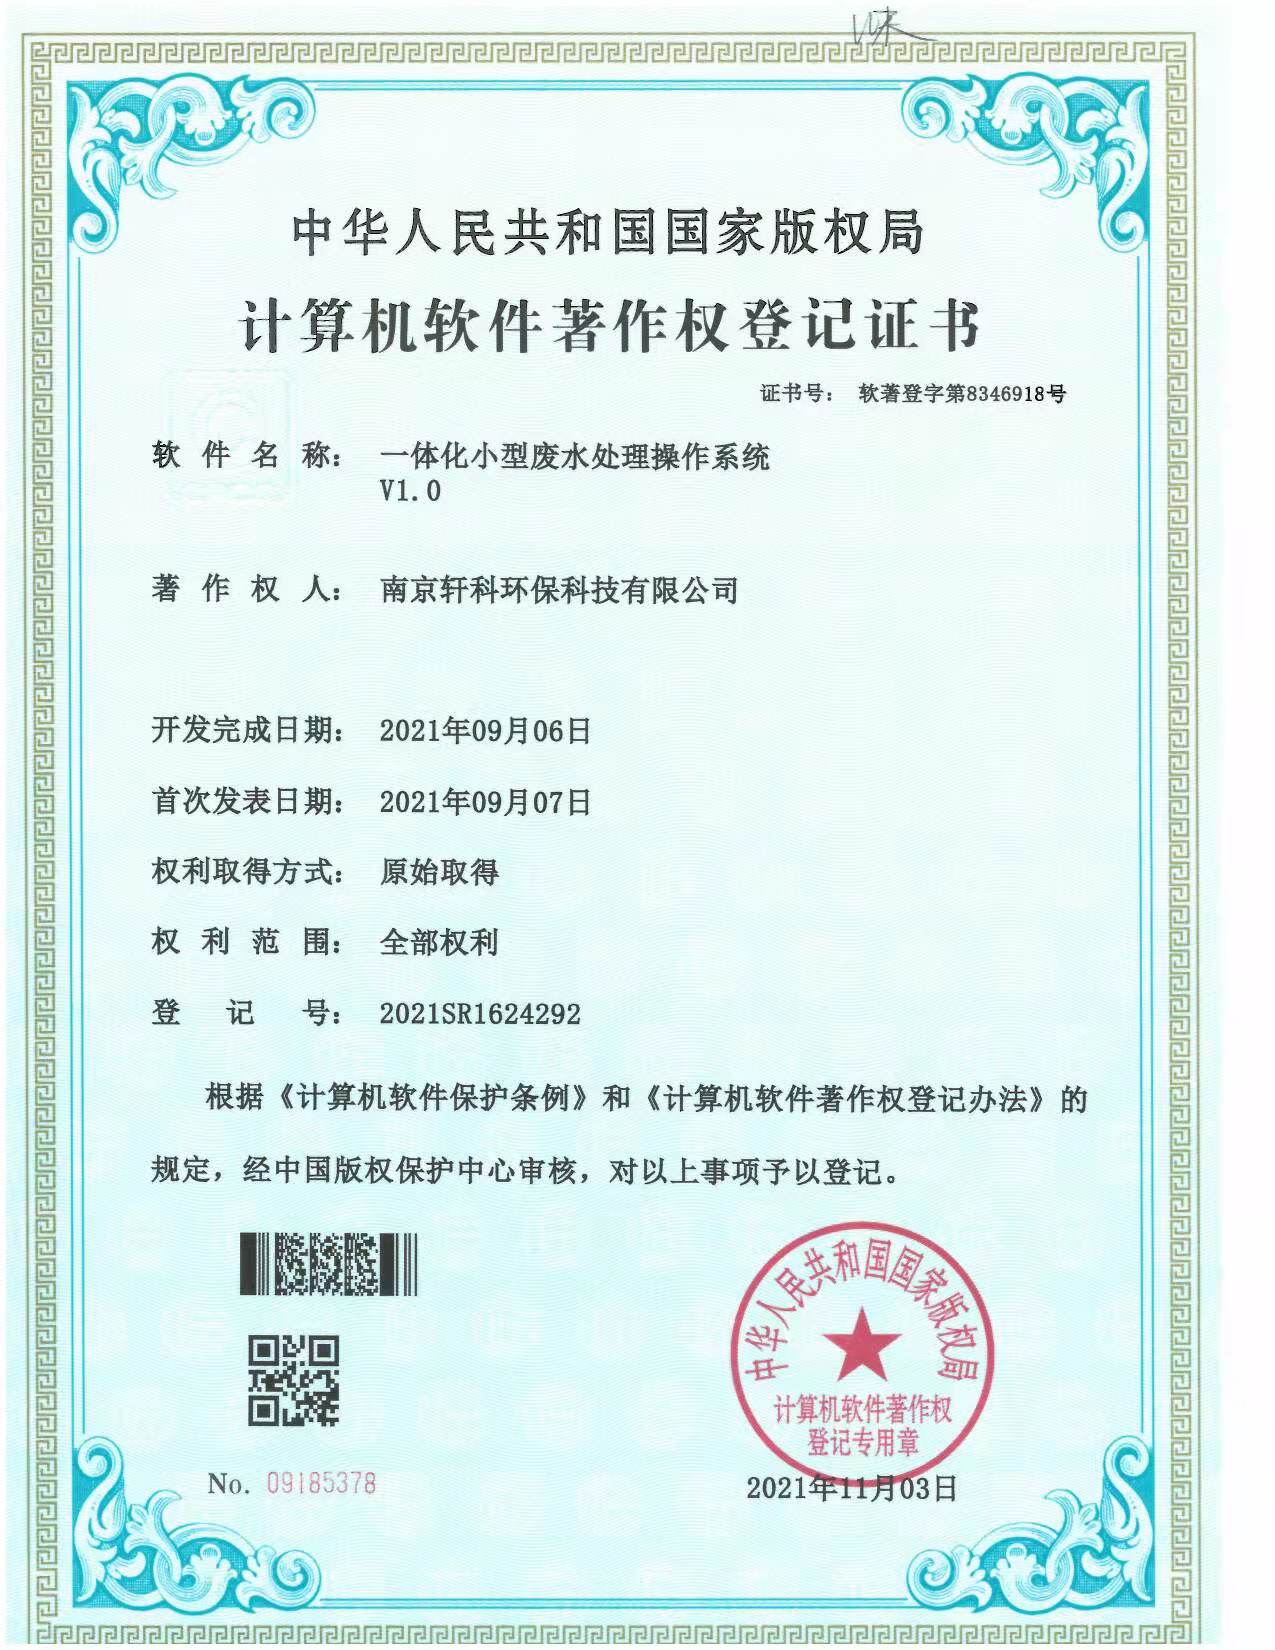 郑州小型一体化废水处理系统软件著作权证书